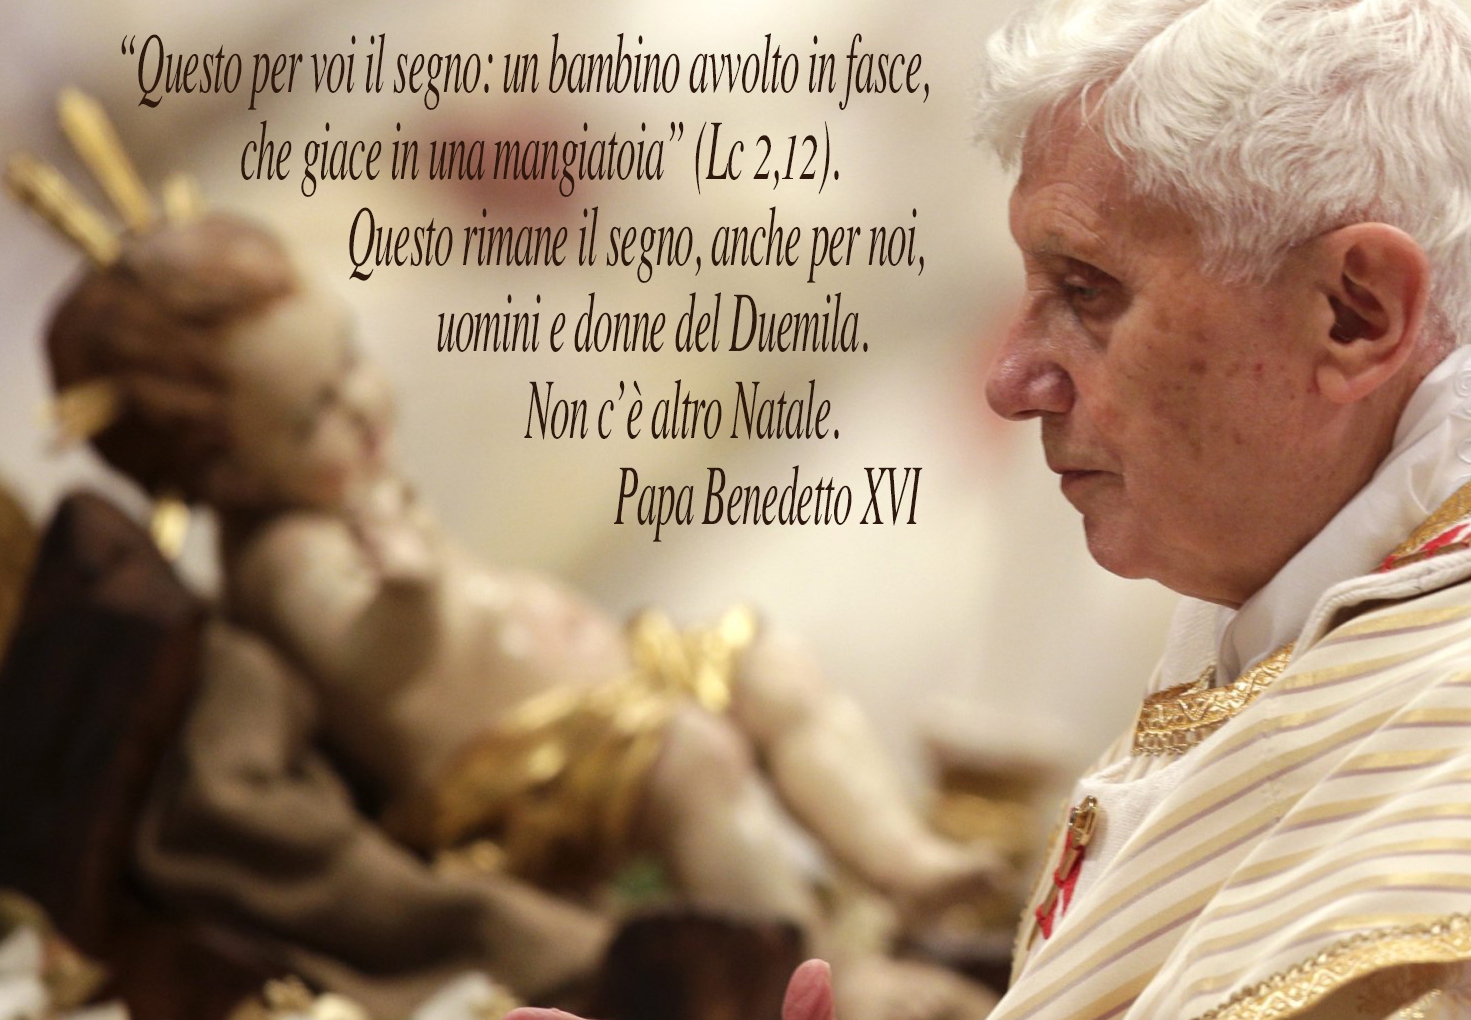 Бенедикт XVI издал неопубликованные проповеди